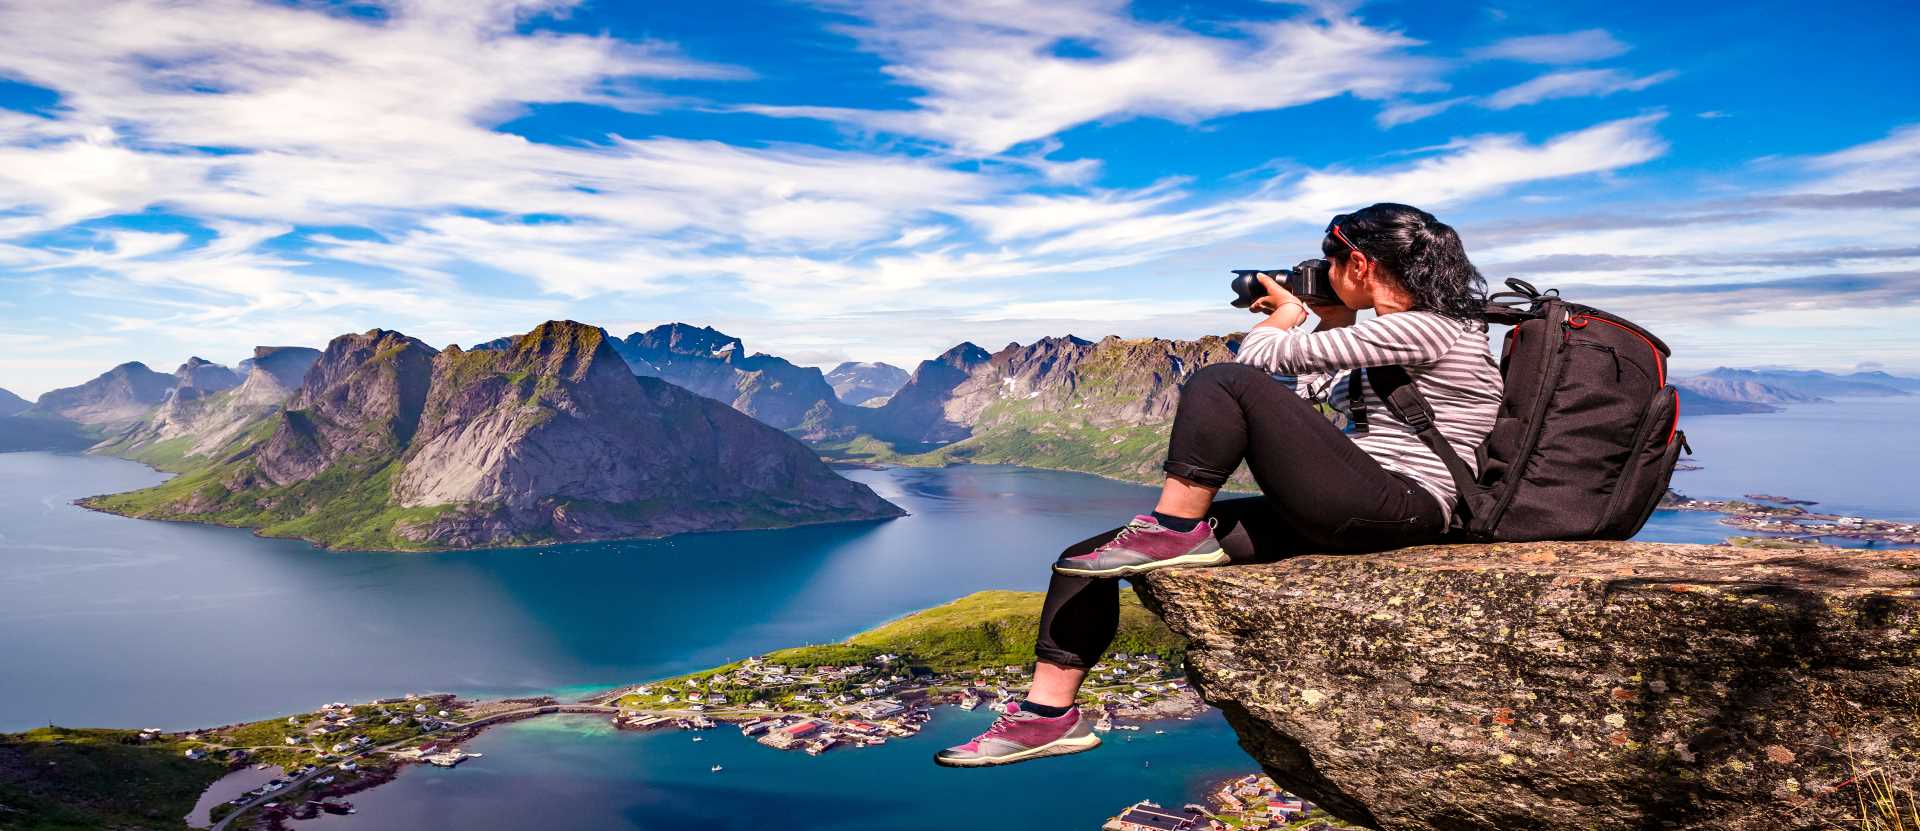 Lofoten Archipelago, Norway - Campsites in Norway